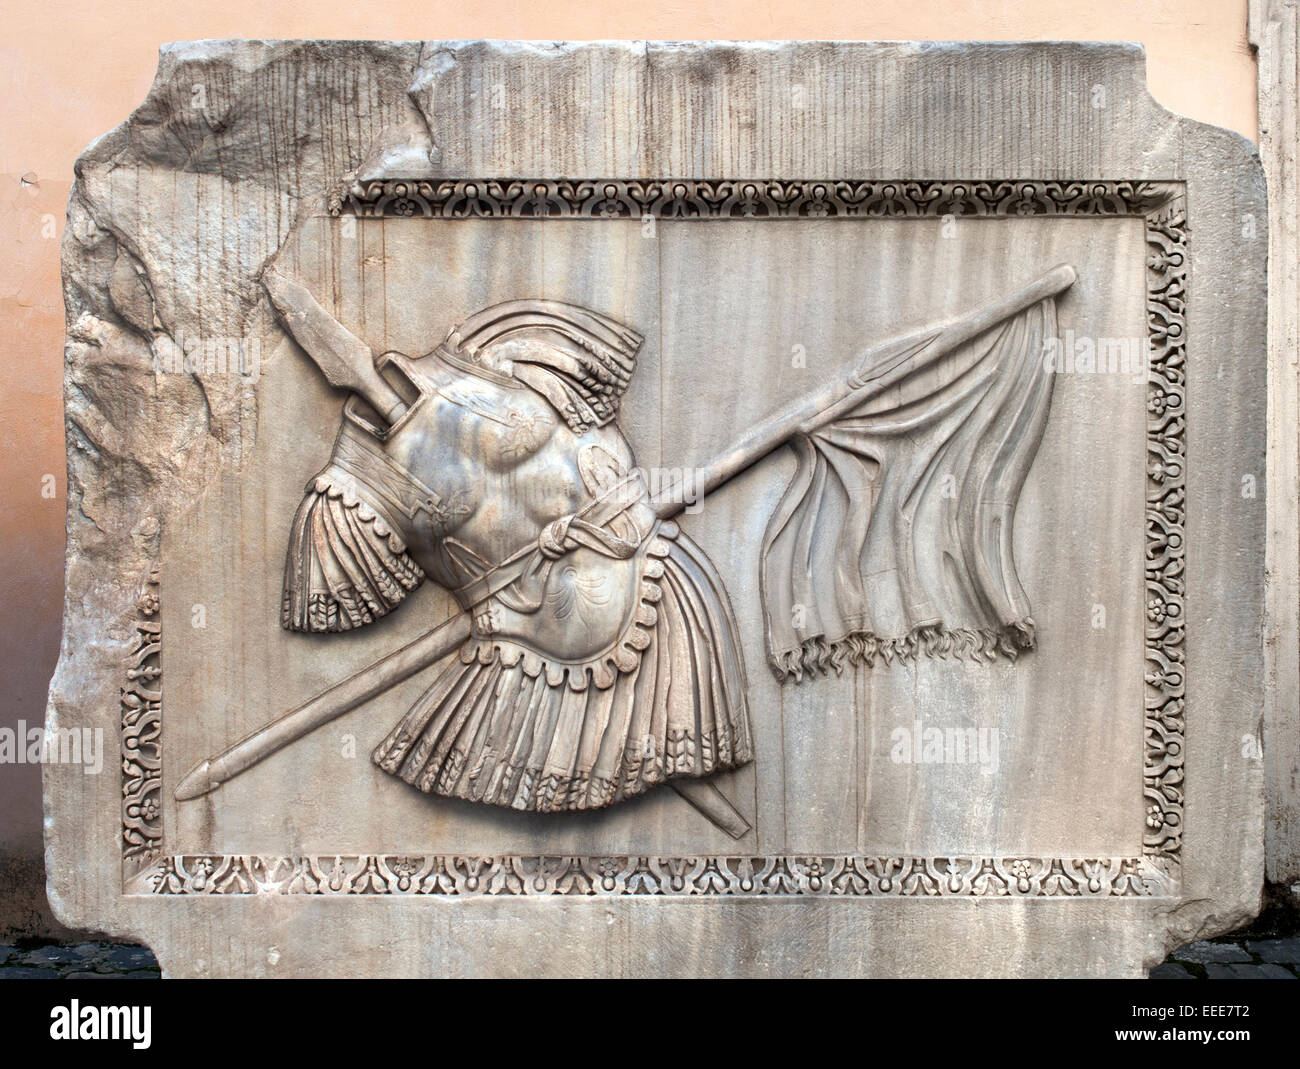 Soulagement de l'armure (armures, lances et drapeau) - Palazzo dei Conservatori, Musée du Capitole de Rome Romain Italie Italien Banque D'Images